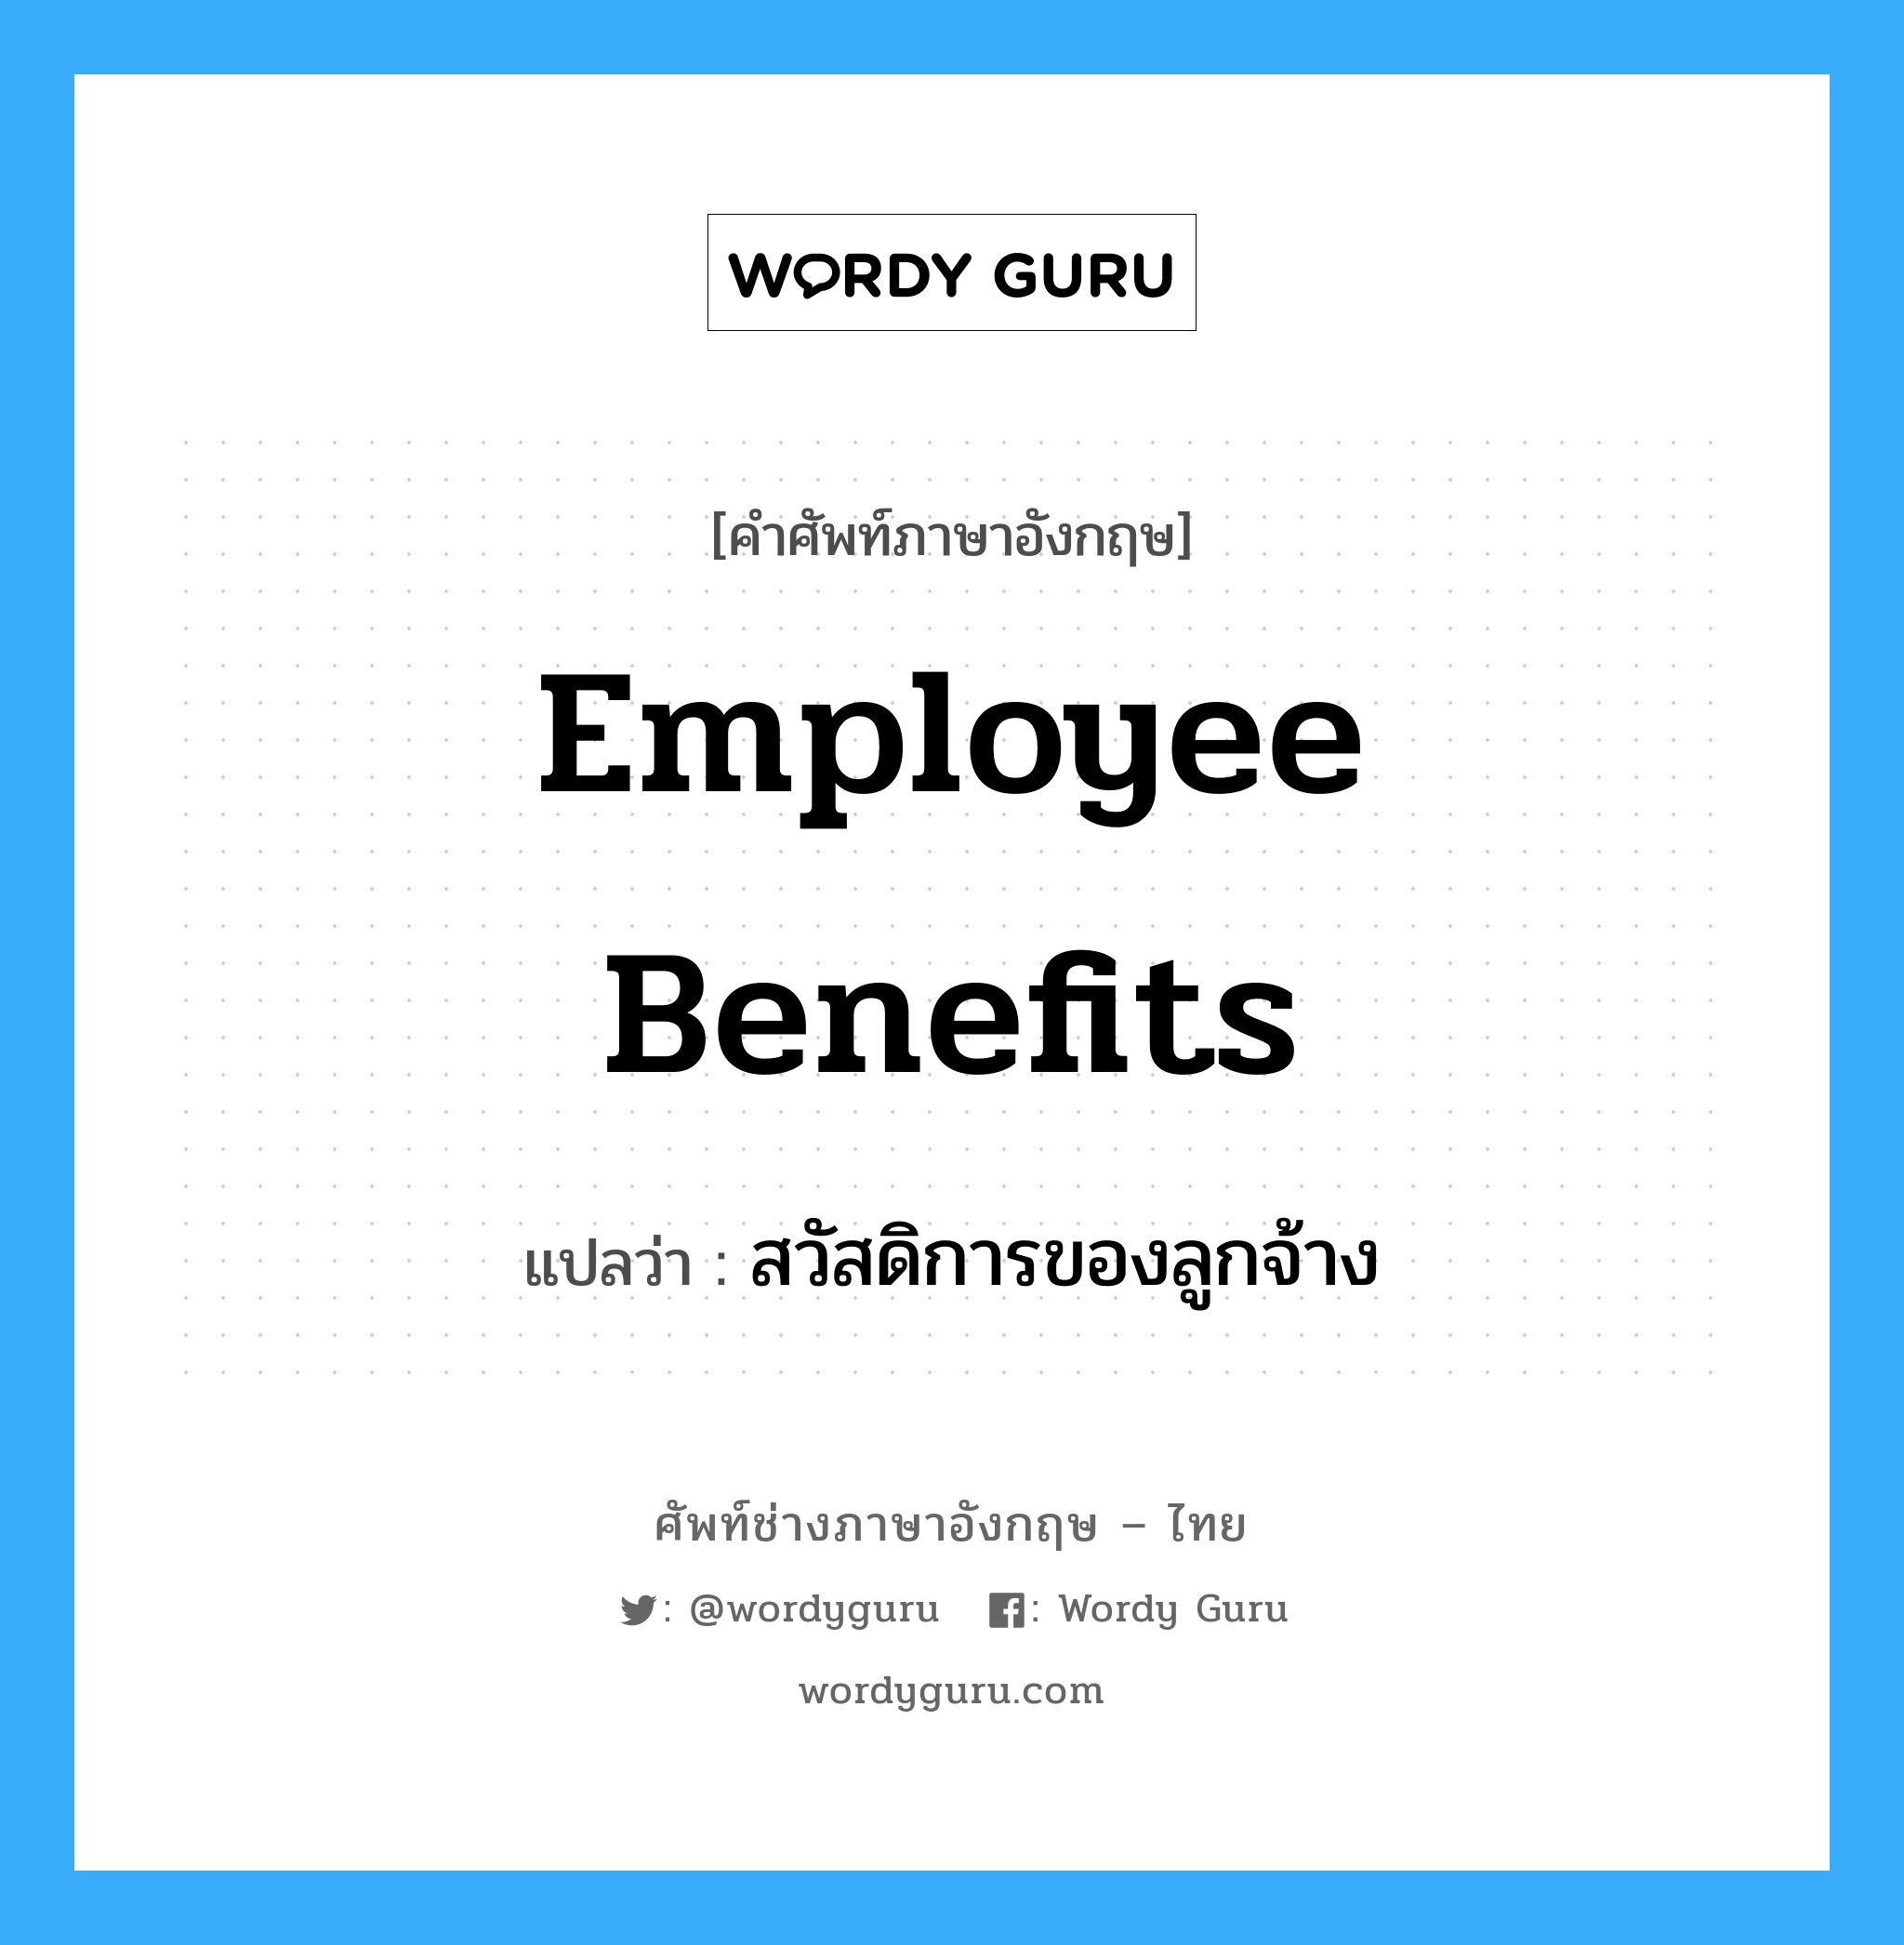 สวัสดิการของลูกจ้าง ภาษาอังกฤษ?, คำศัพท์ช่างภาษาอังกฤษ - ไทย สวัสดิการของลูกจ้าง คำศัพท์ภาษาอังกฤษ สวัสดิการของลูกจ้าง แปลว่า Employee Benefits